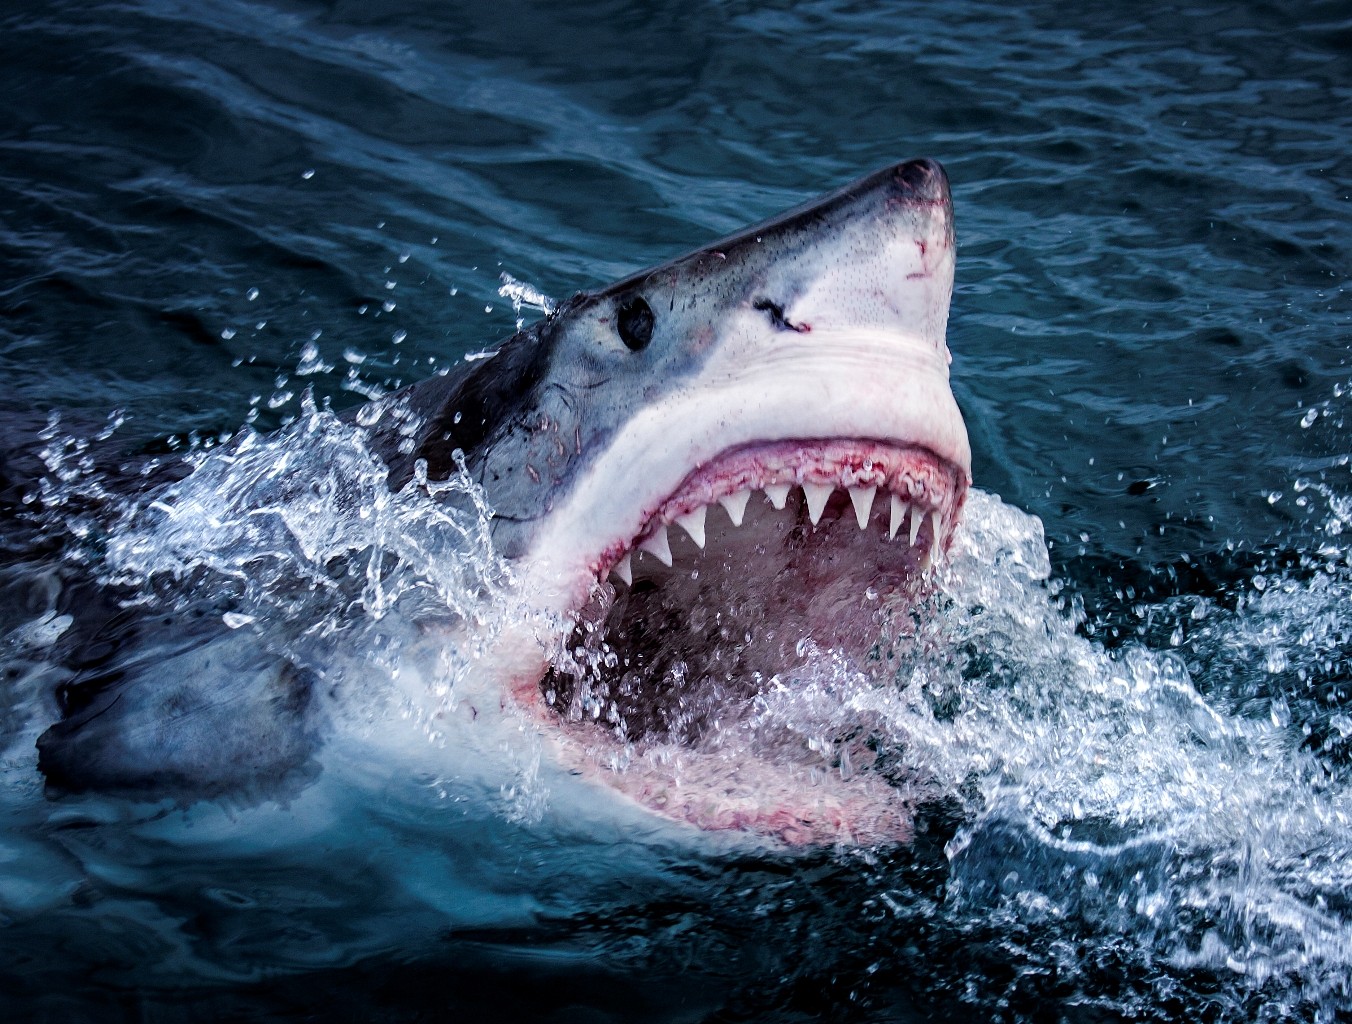 Tubarão-branco na série 'Shark' (Foto: Divulgação/BBC - Morné Hardenberg)